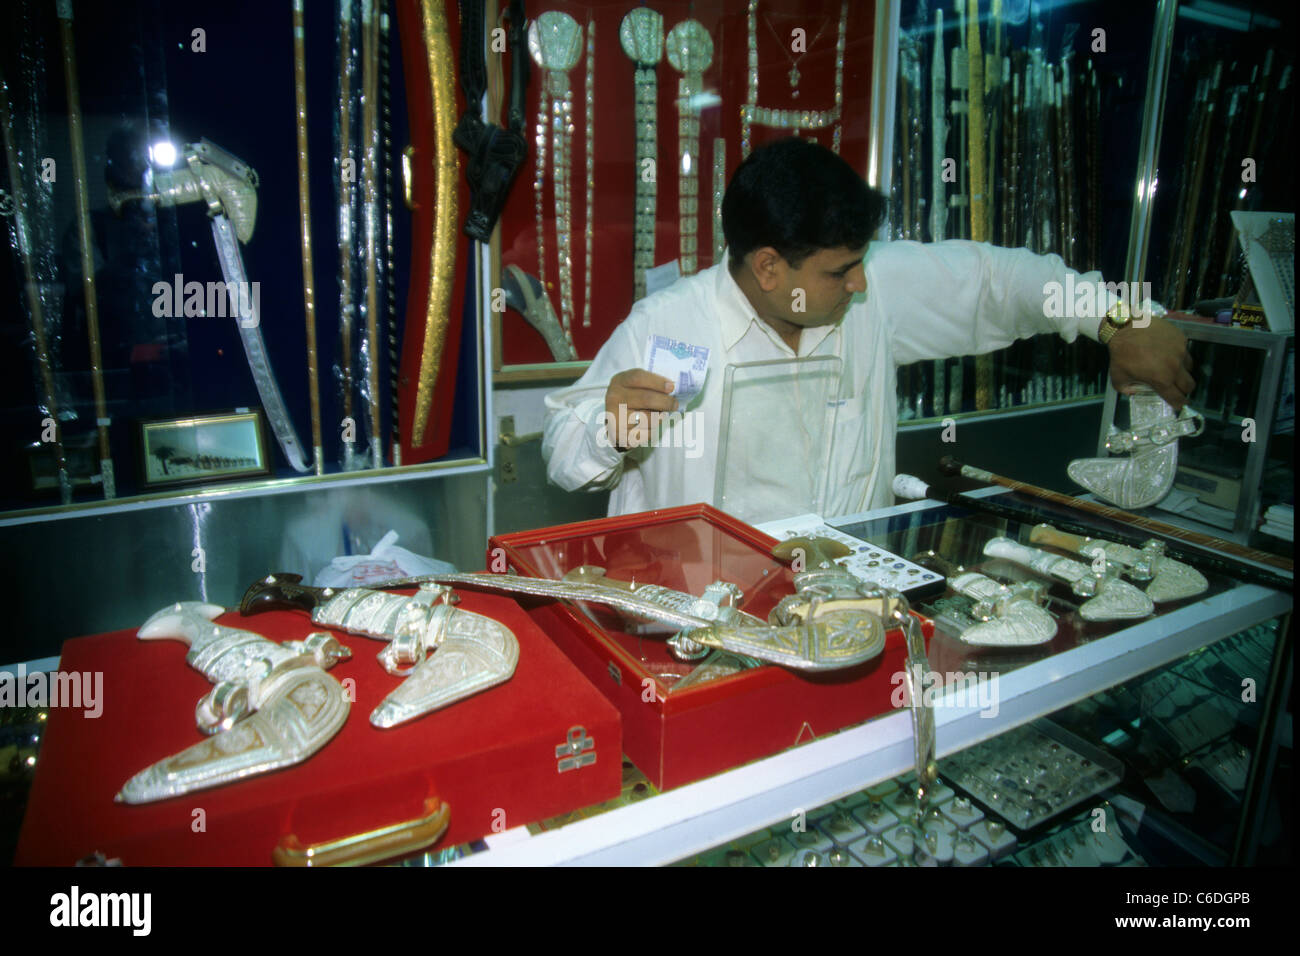 Laden mit Krummdolchen, der Kanjhar ist ein traditioneller Maennerschmuck, Salalah, Kanjhar, traditional curved dagger, shop Stock Photo